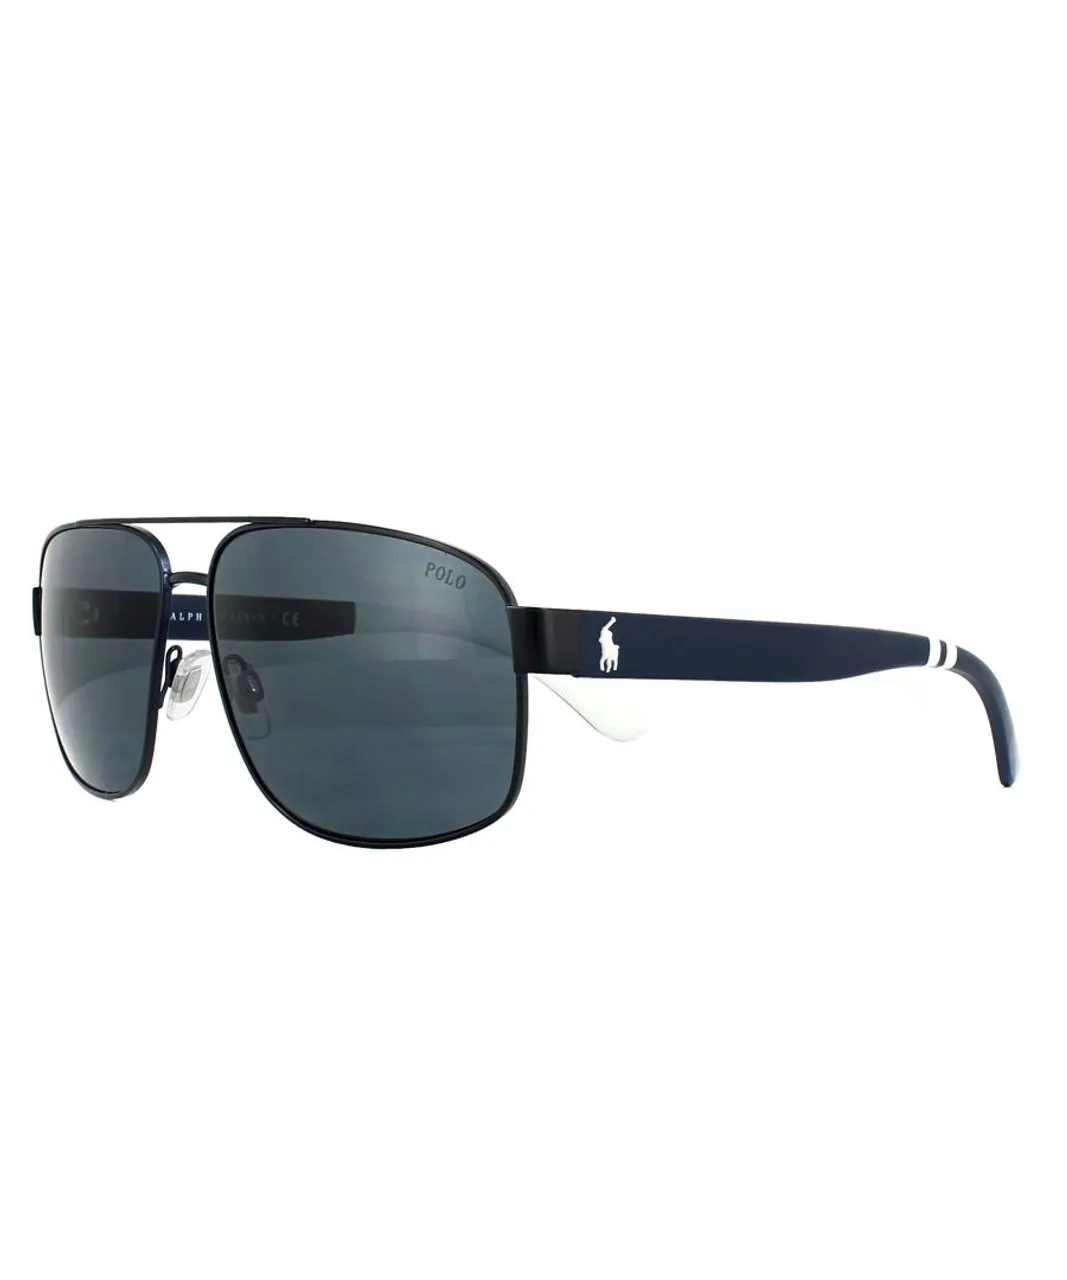 Polo Ralph Lauren Aviator Mens Matt Navy Blue Grey Sunglasses - One